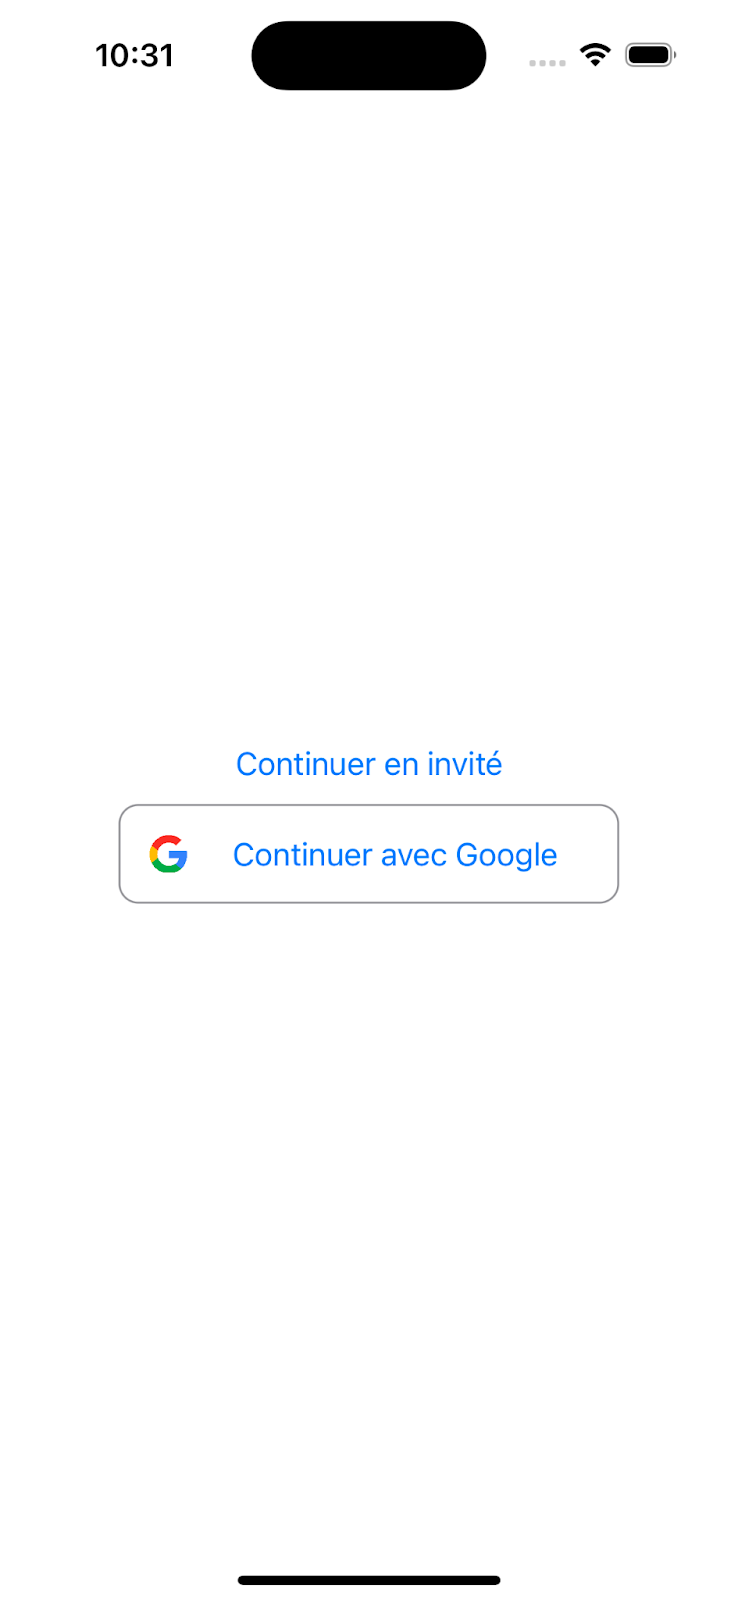 Ecran de l'application avec l'ajout du bouton "Continuer avec Google"